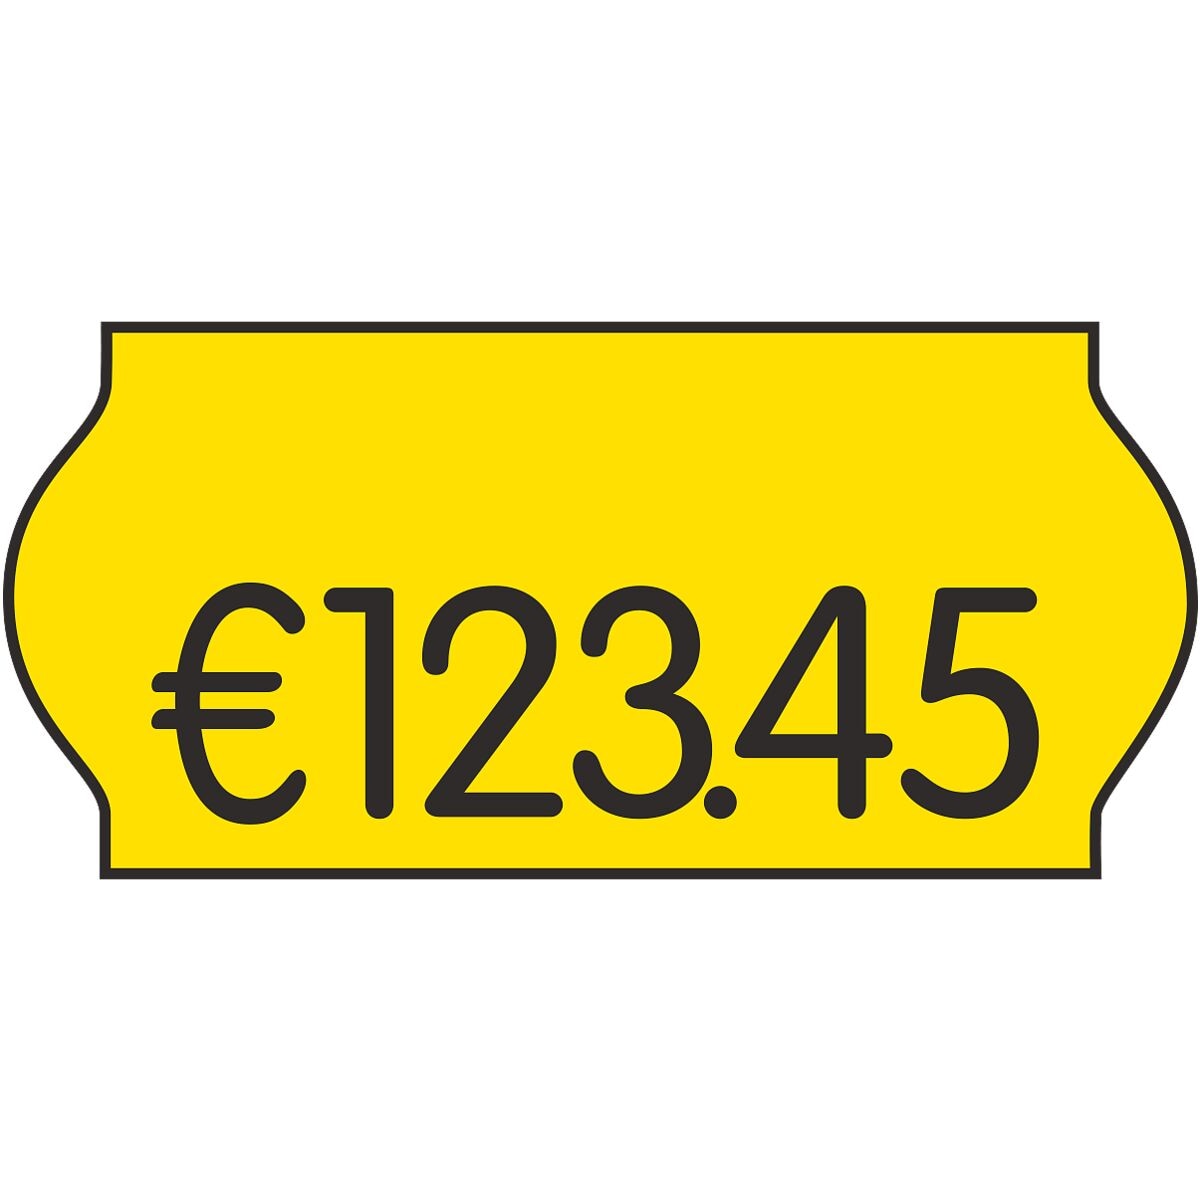 36er-Pack Preisauszeichnungsetiketten 26 x 12 mm leuchtgelb permanent (je 1500 Stck)